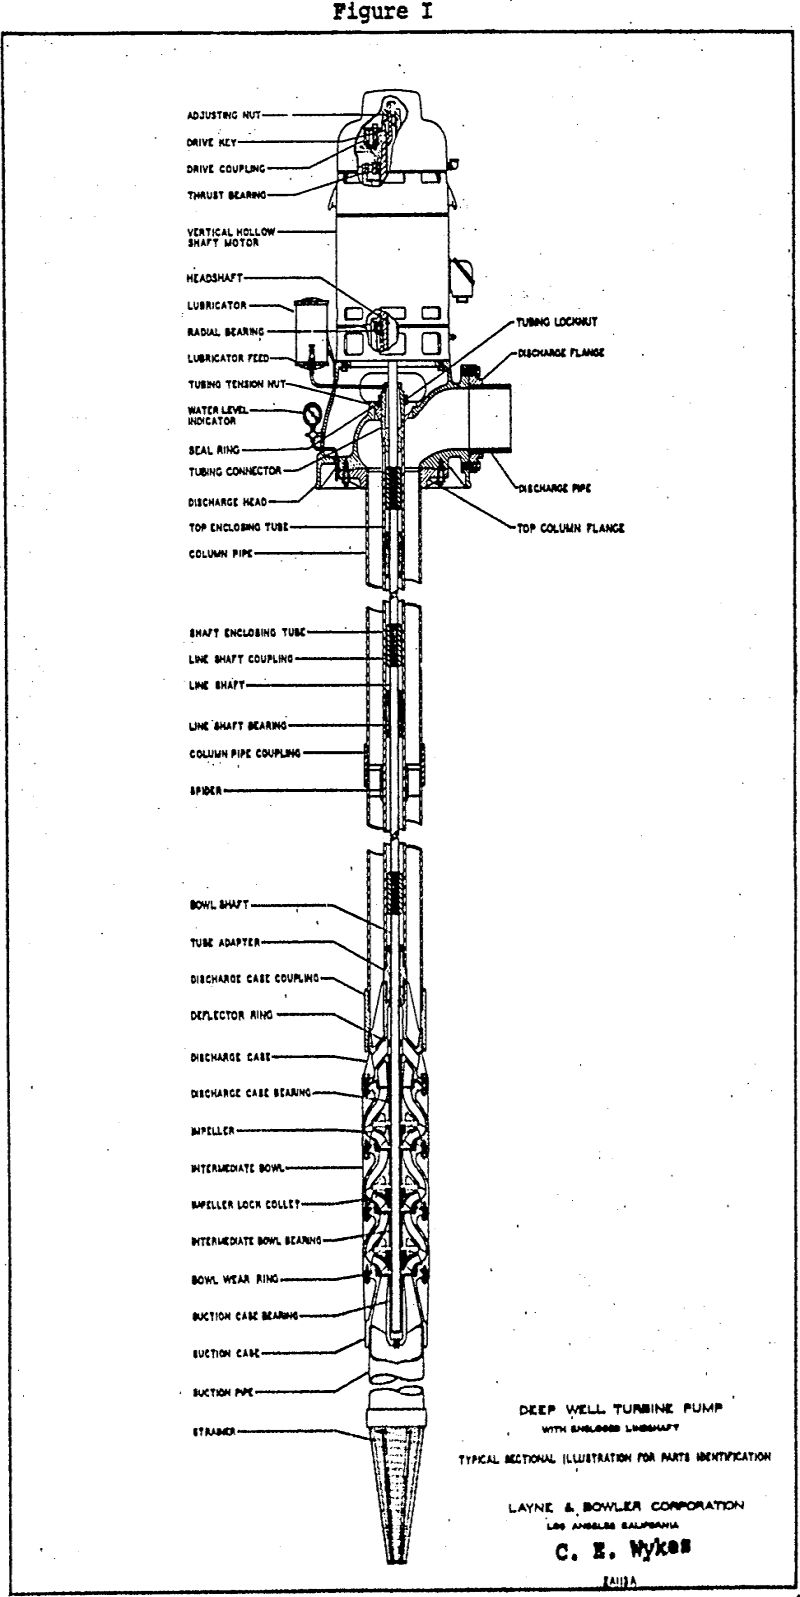 turbine-pumps illustrations